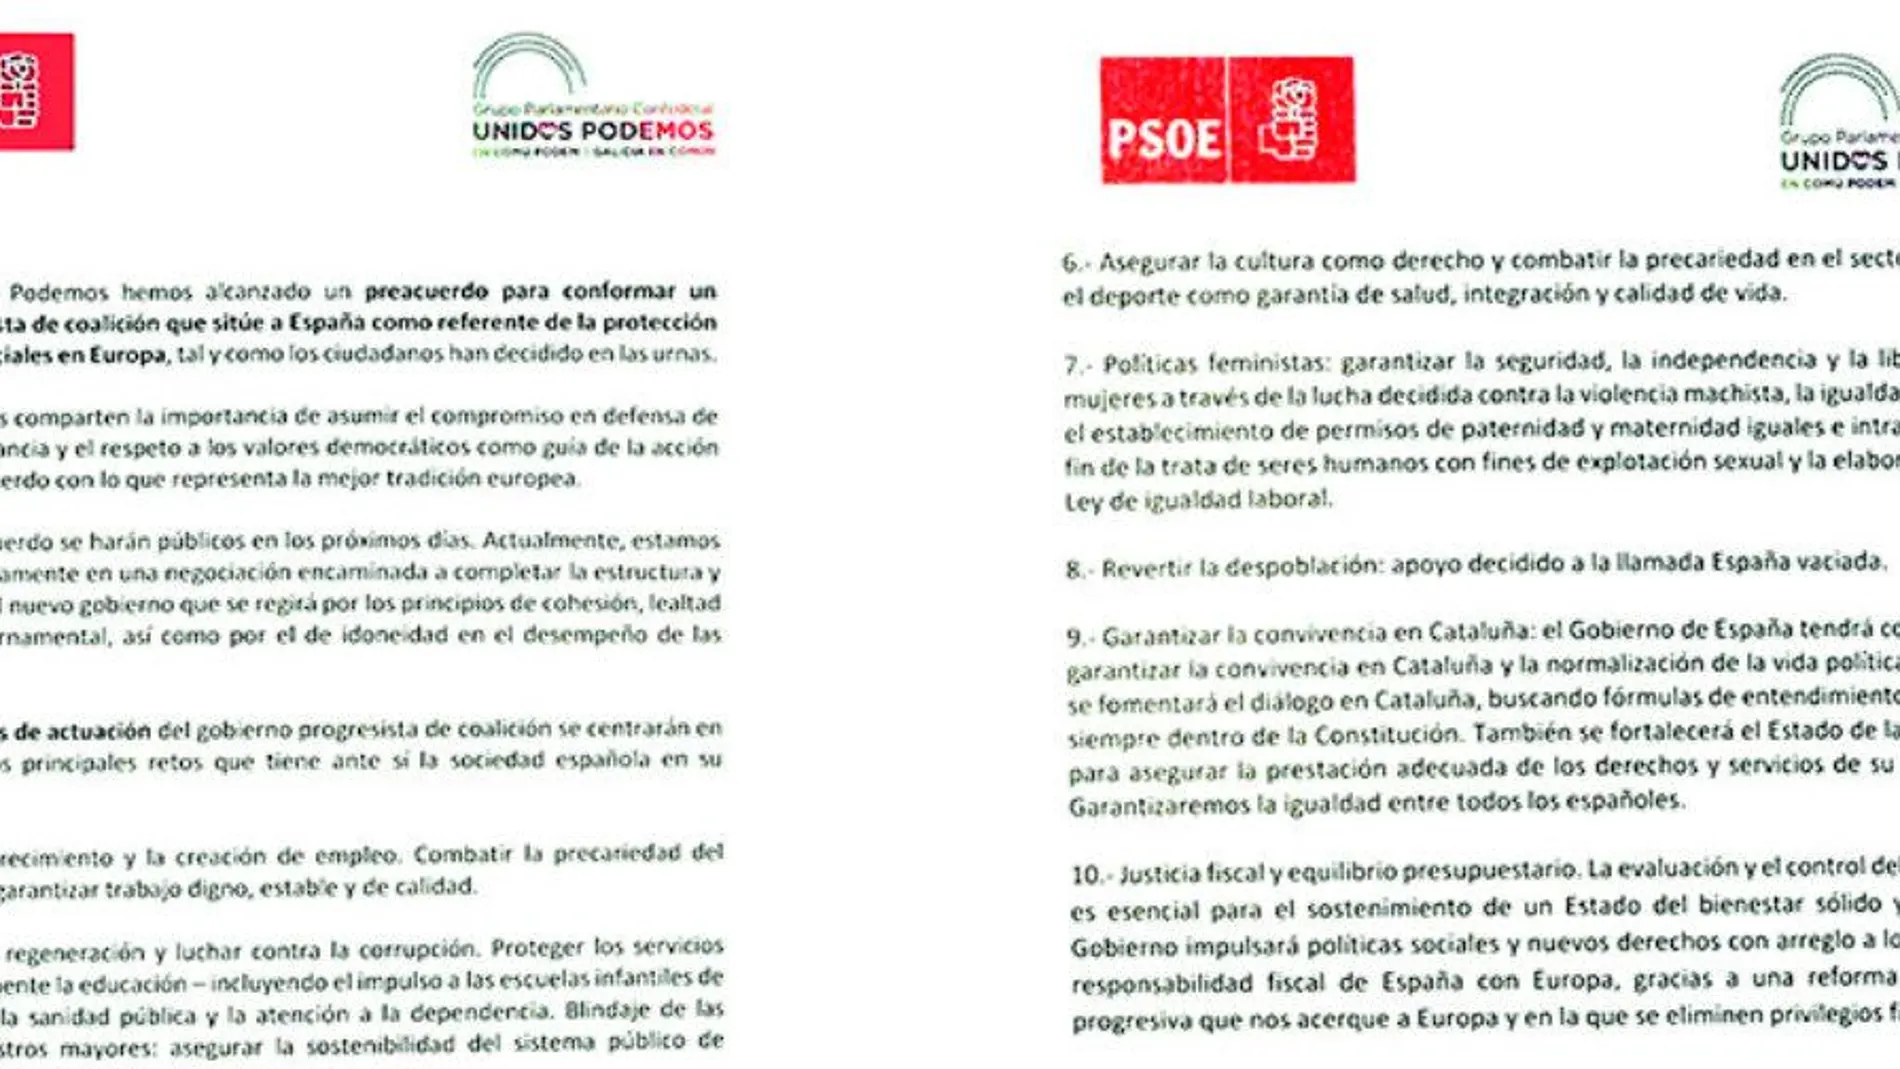 Las dos páginas del acuerdo suscrito entre el PSOE y Unidas Podemos